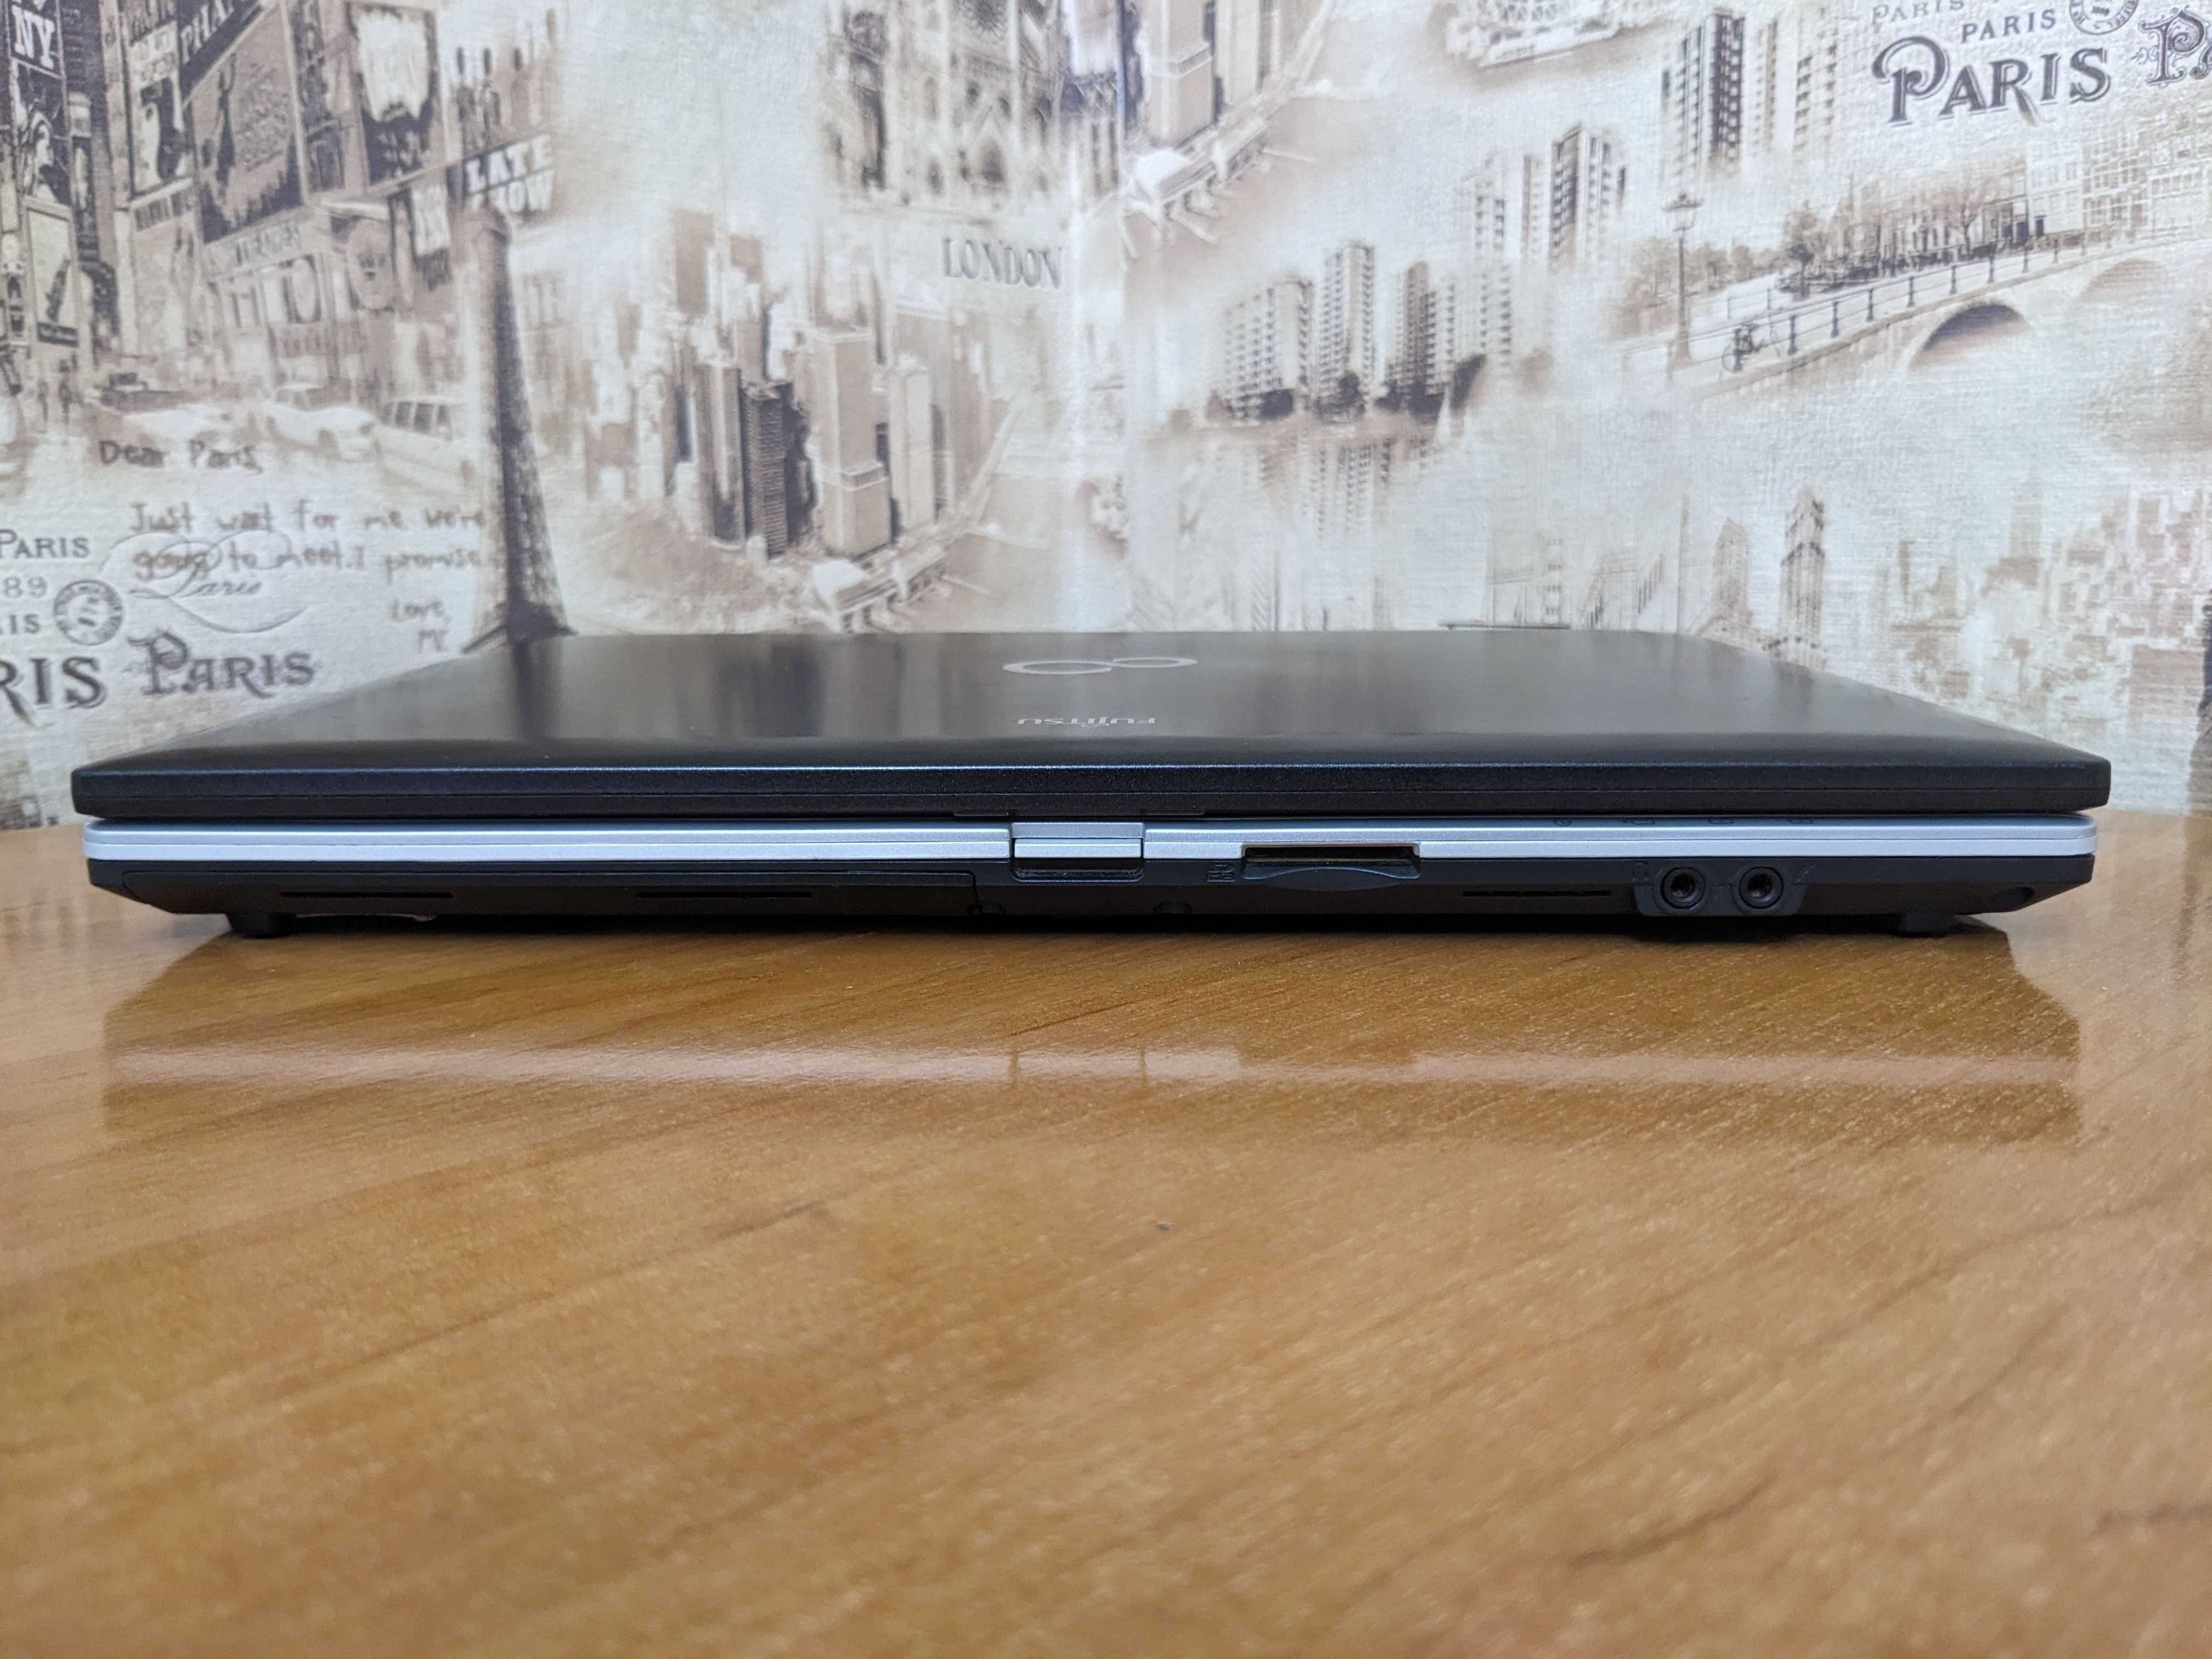 Ноутбук Fujitsu LifeBook S760 i5-520M 2.40Ghz 3Gb RAM 320Gb HDD